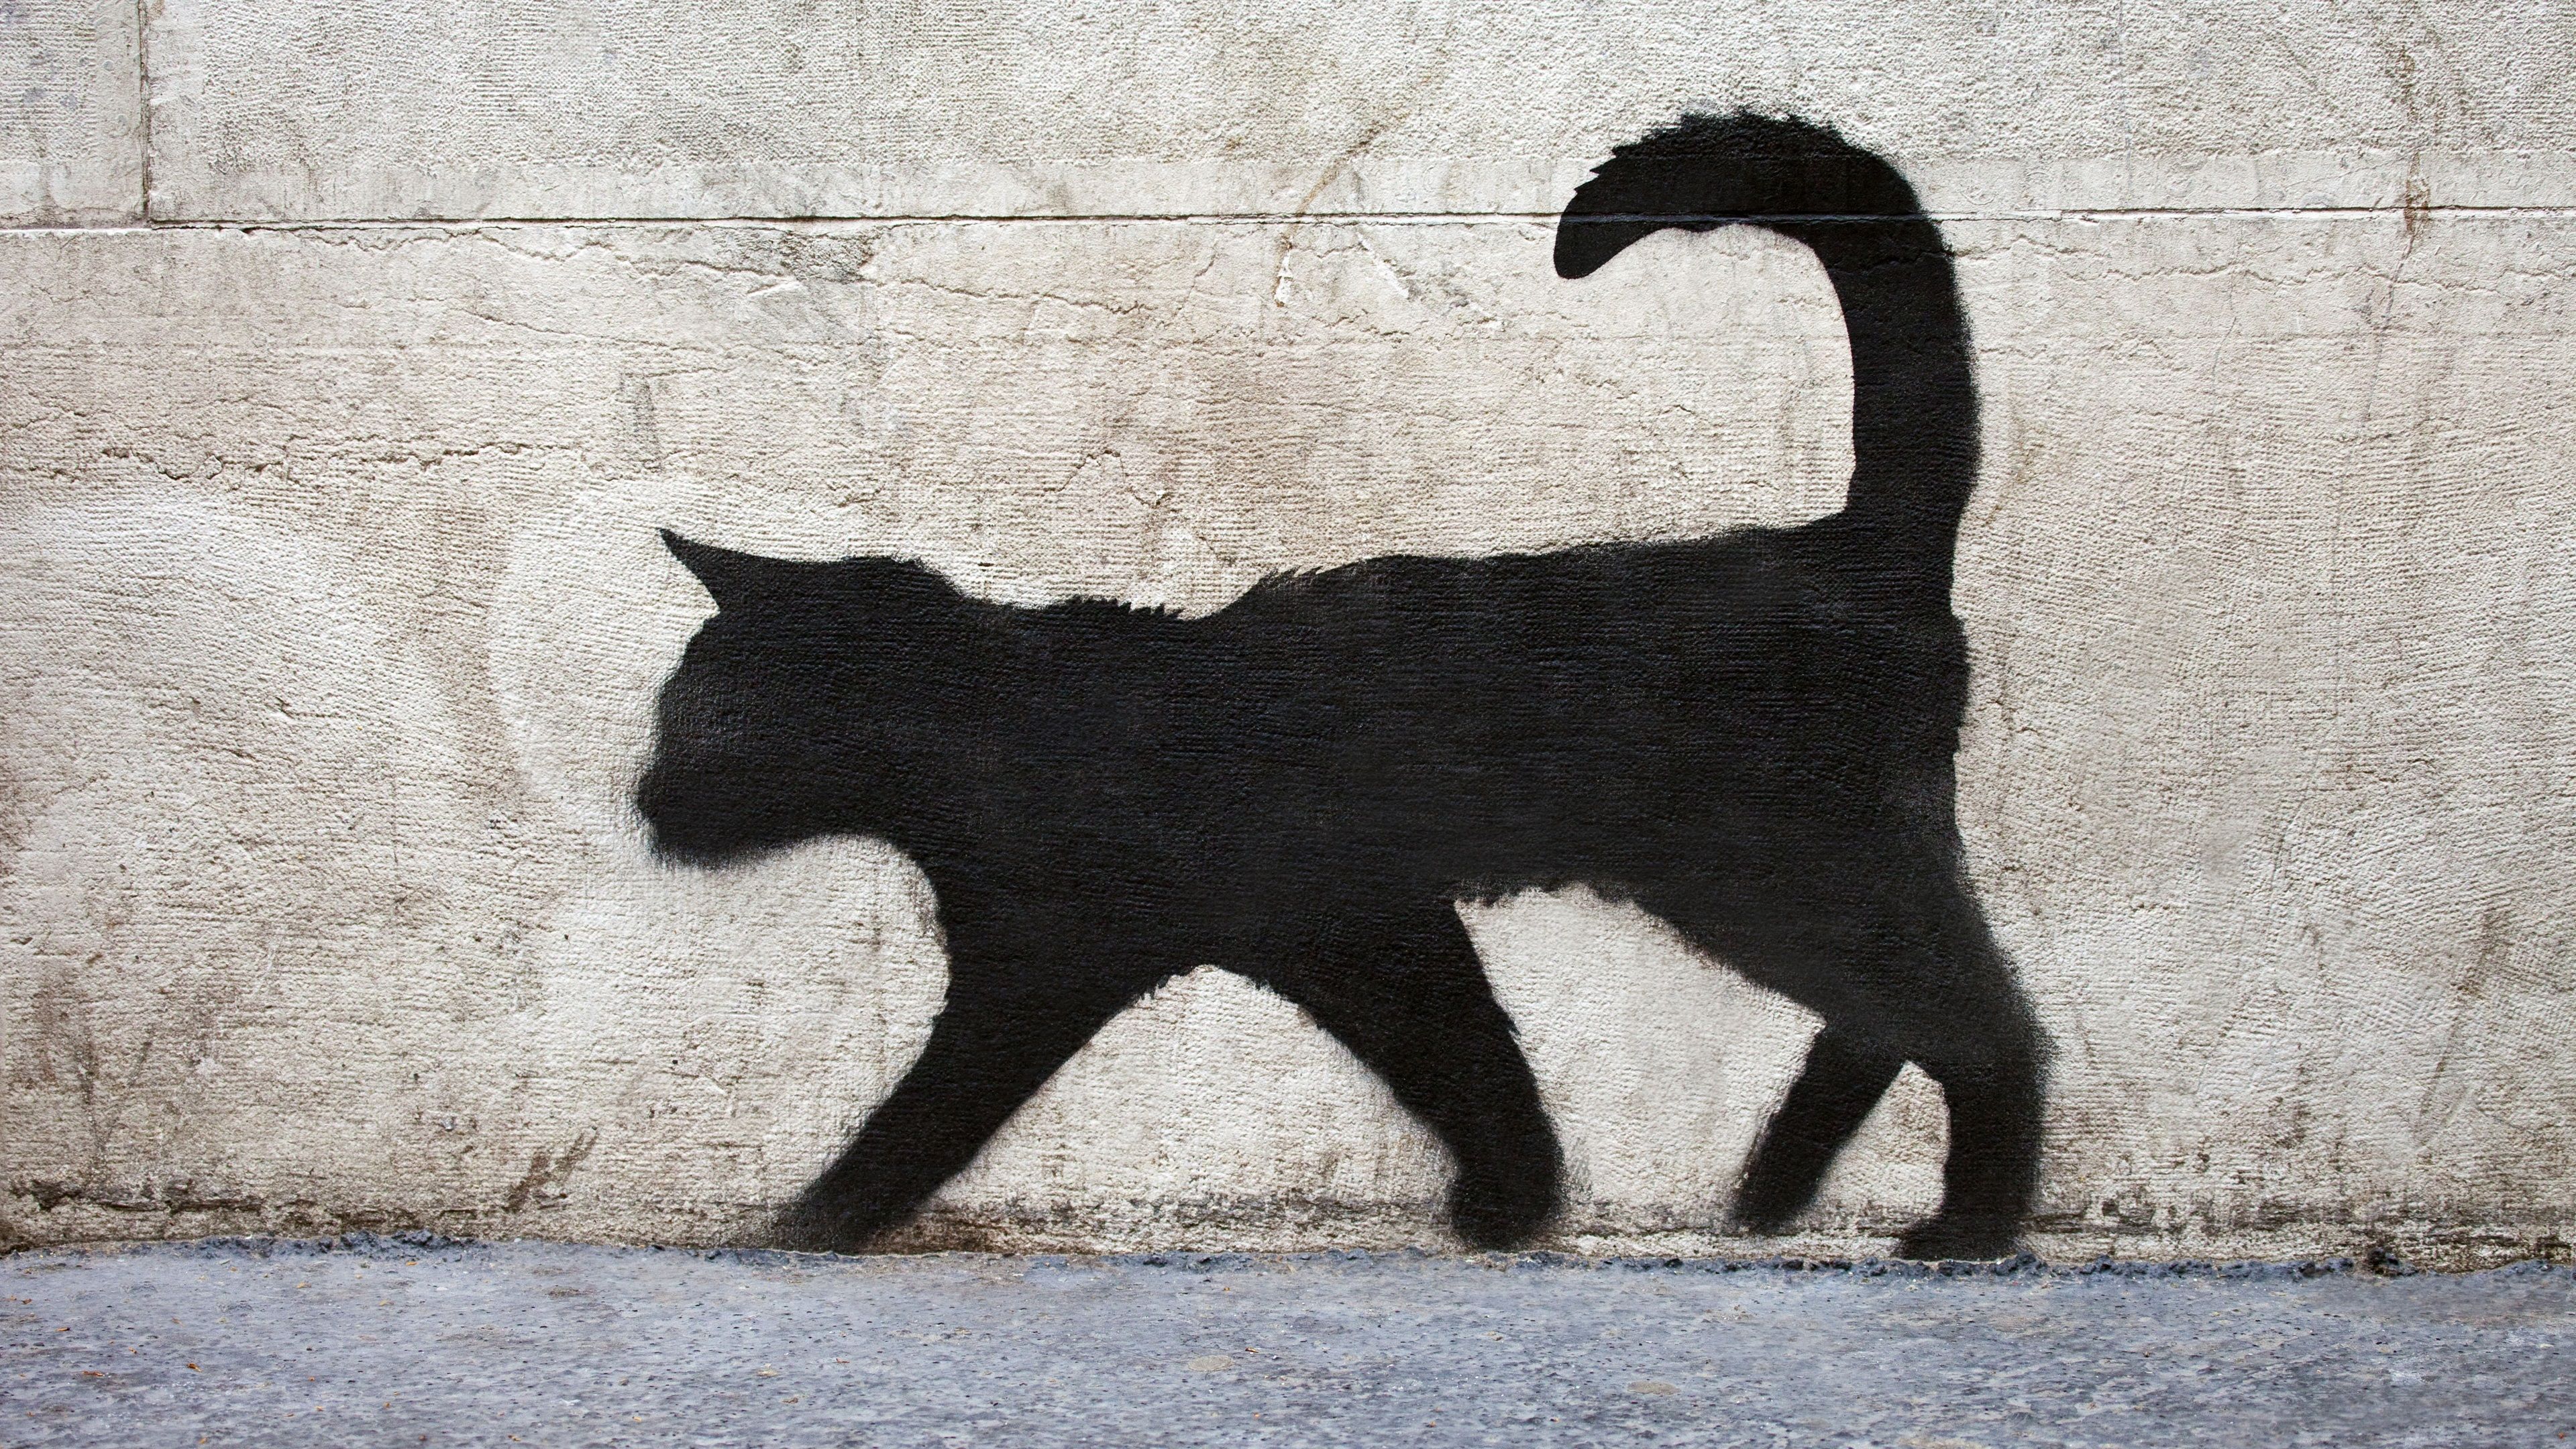 Wallpaper Black cat walk, graffiti, wall 3840x2160 UHD 4K Picture